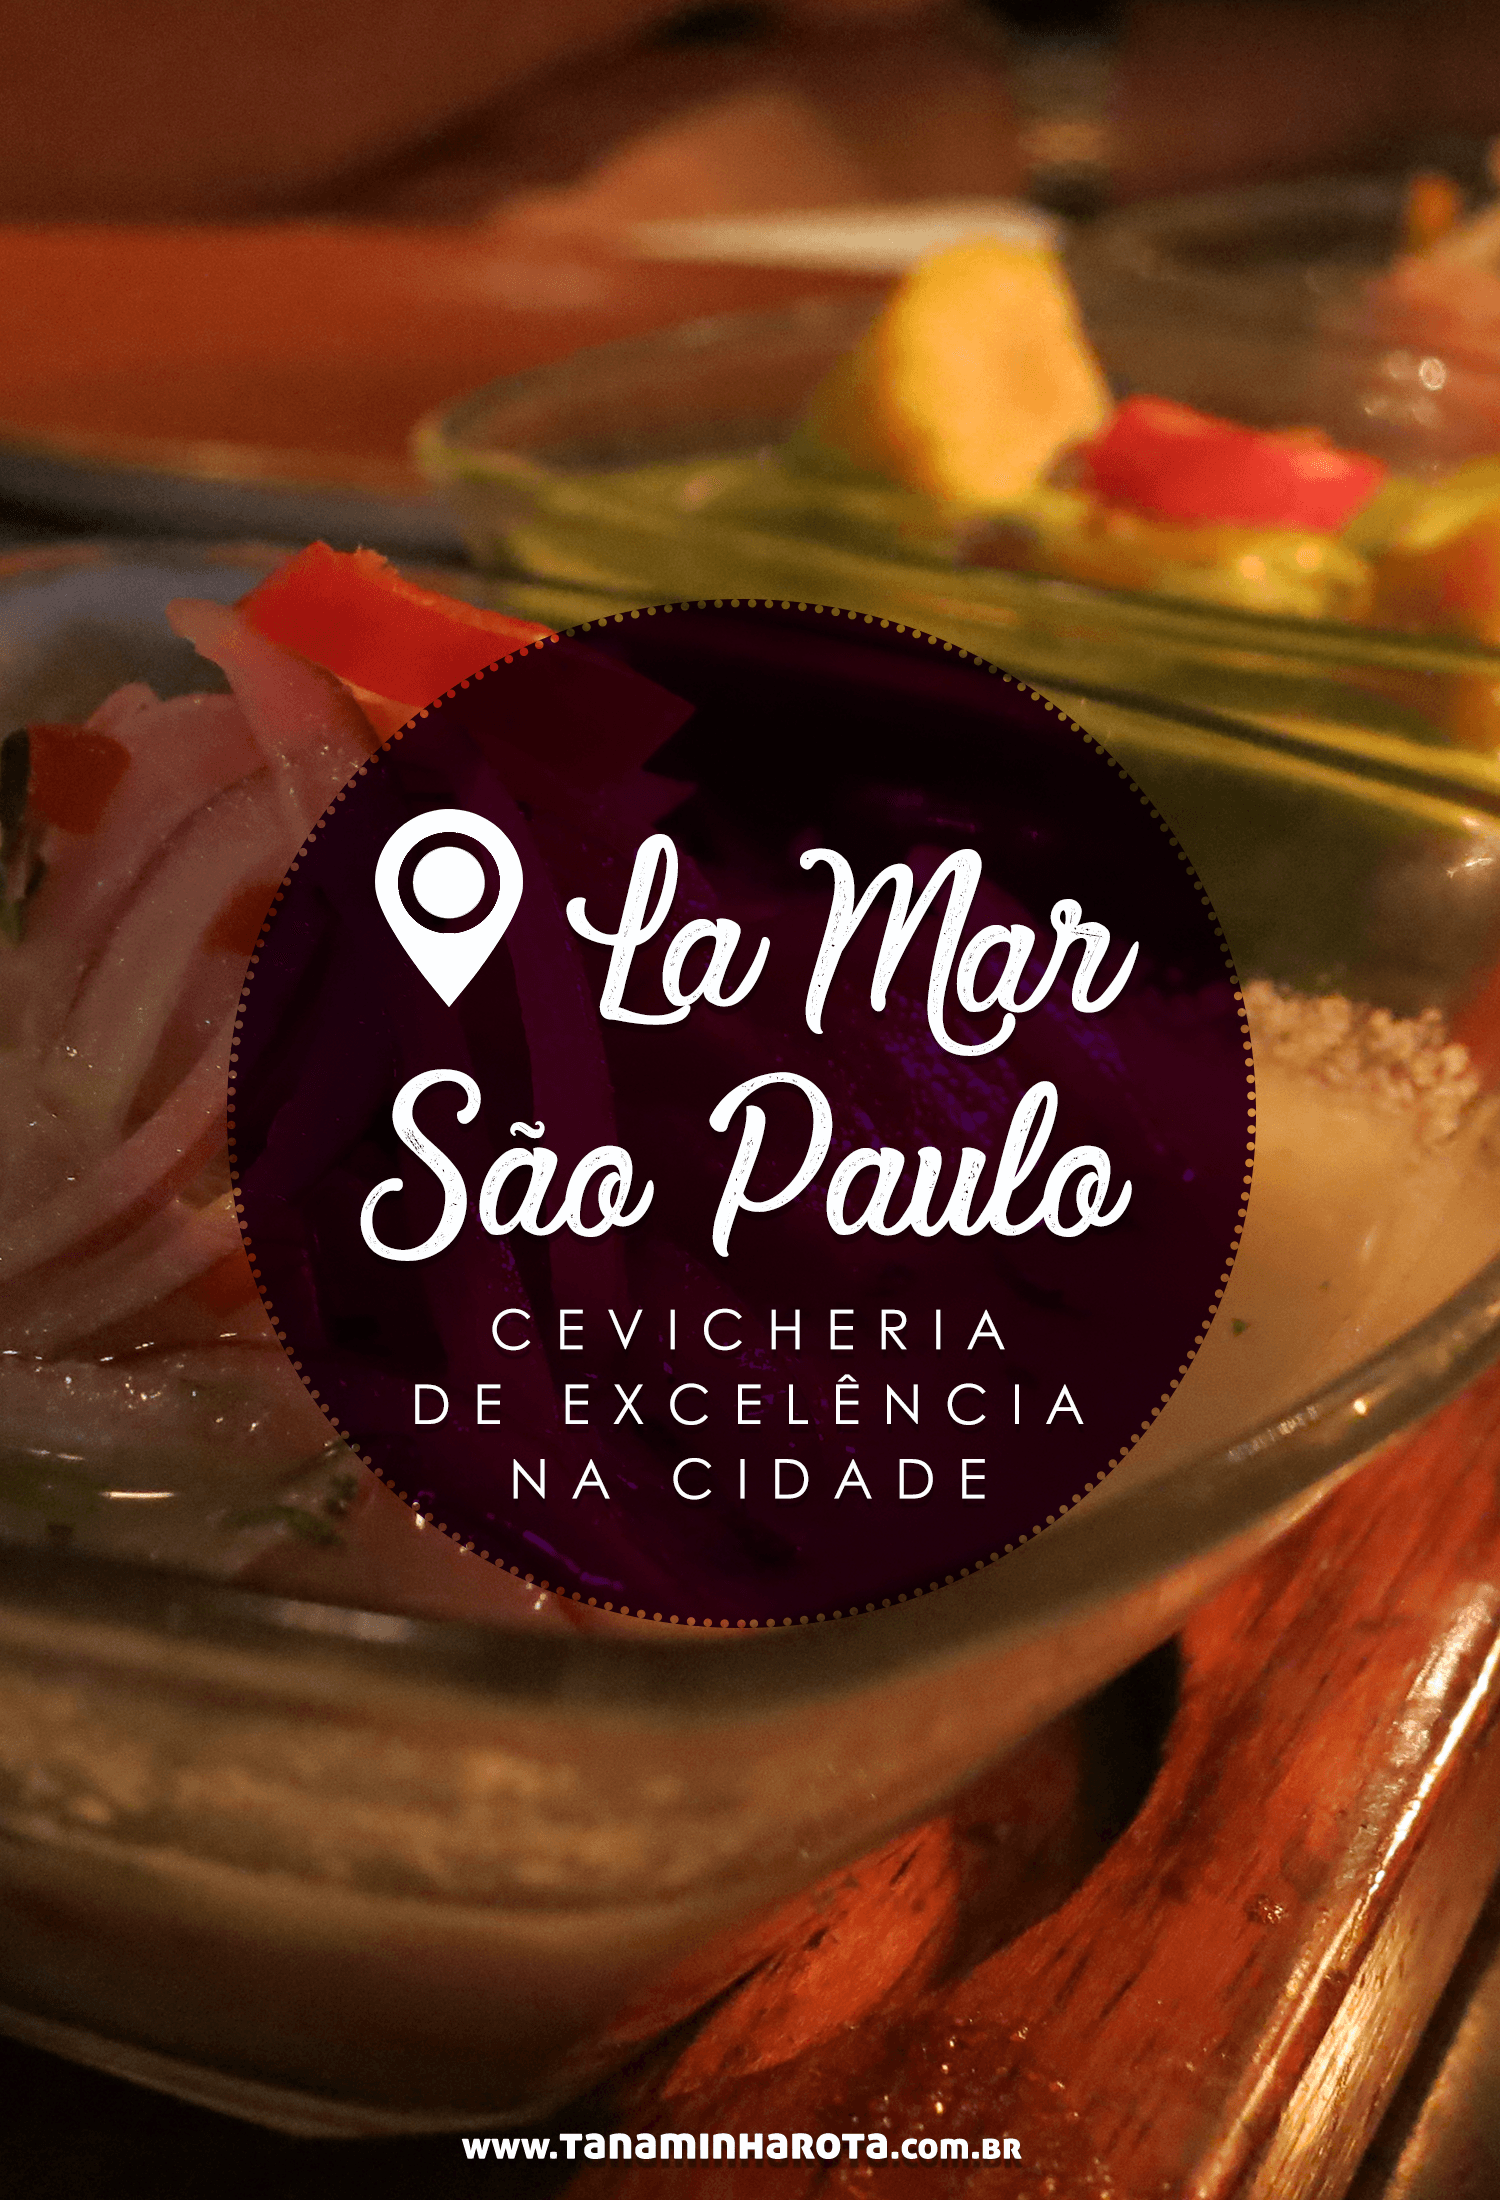 Procurando por uma ótima cevicheria em São Paulo? Então você precisa conhecer o restaurante La Mar, com pratos deliciosos! #gastronomia #saopaulo #brasil #viagem